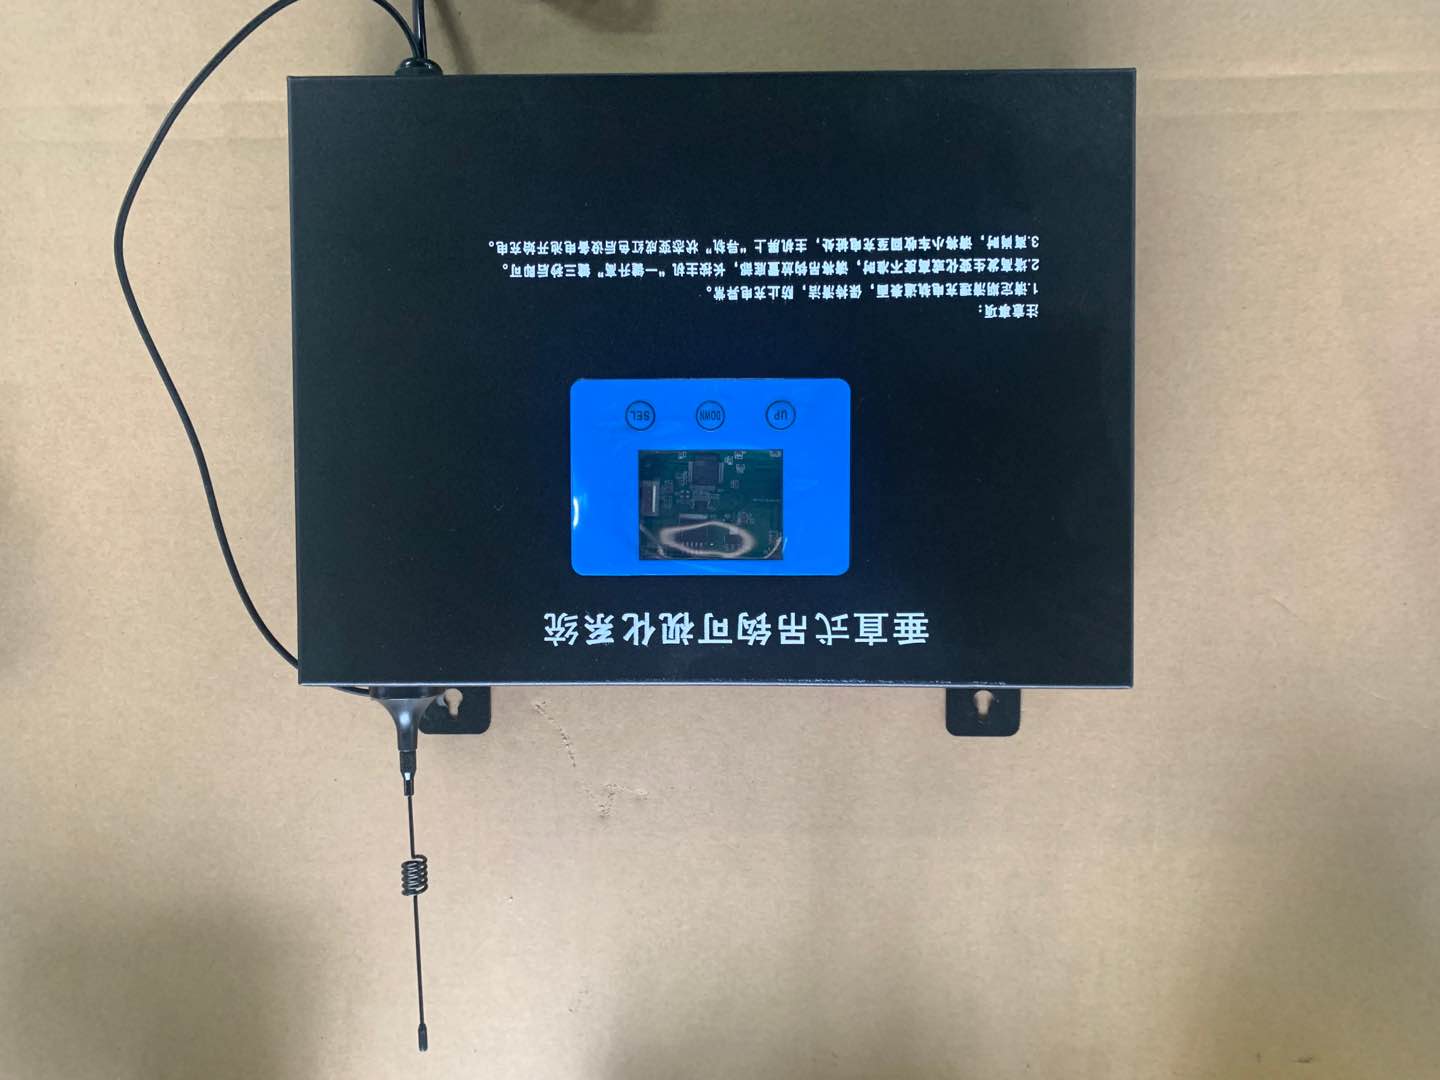 湖州塔吊防碰撞系统设备 安徽晟尚智能科技有限公司